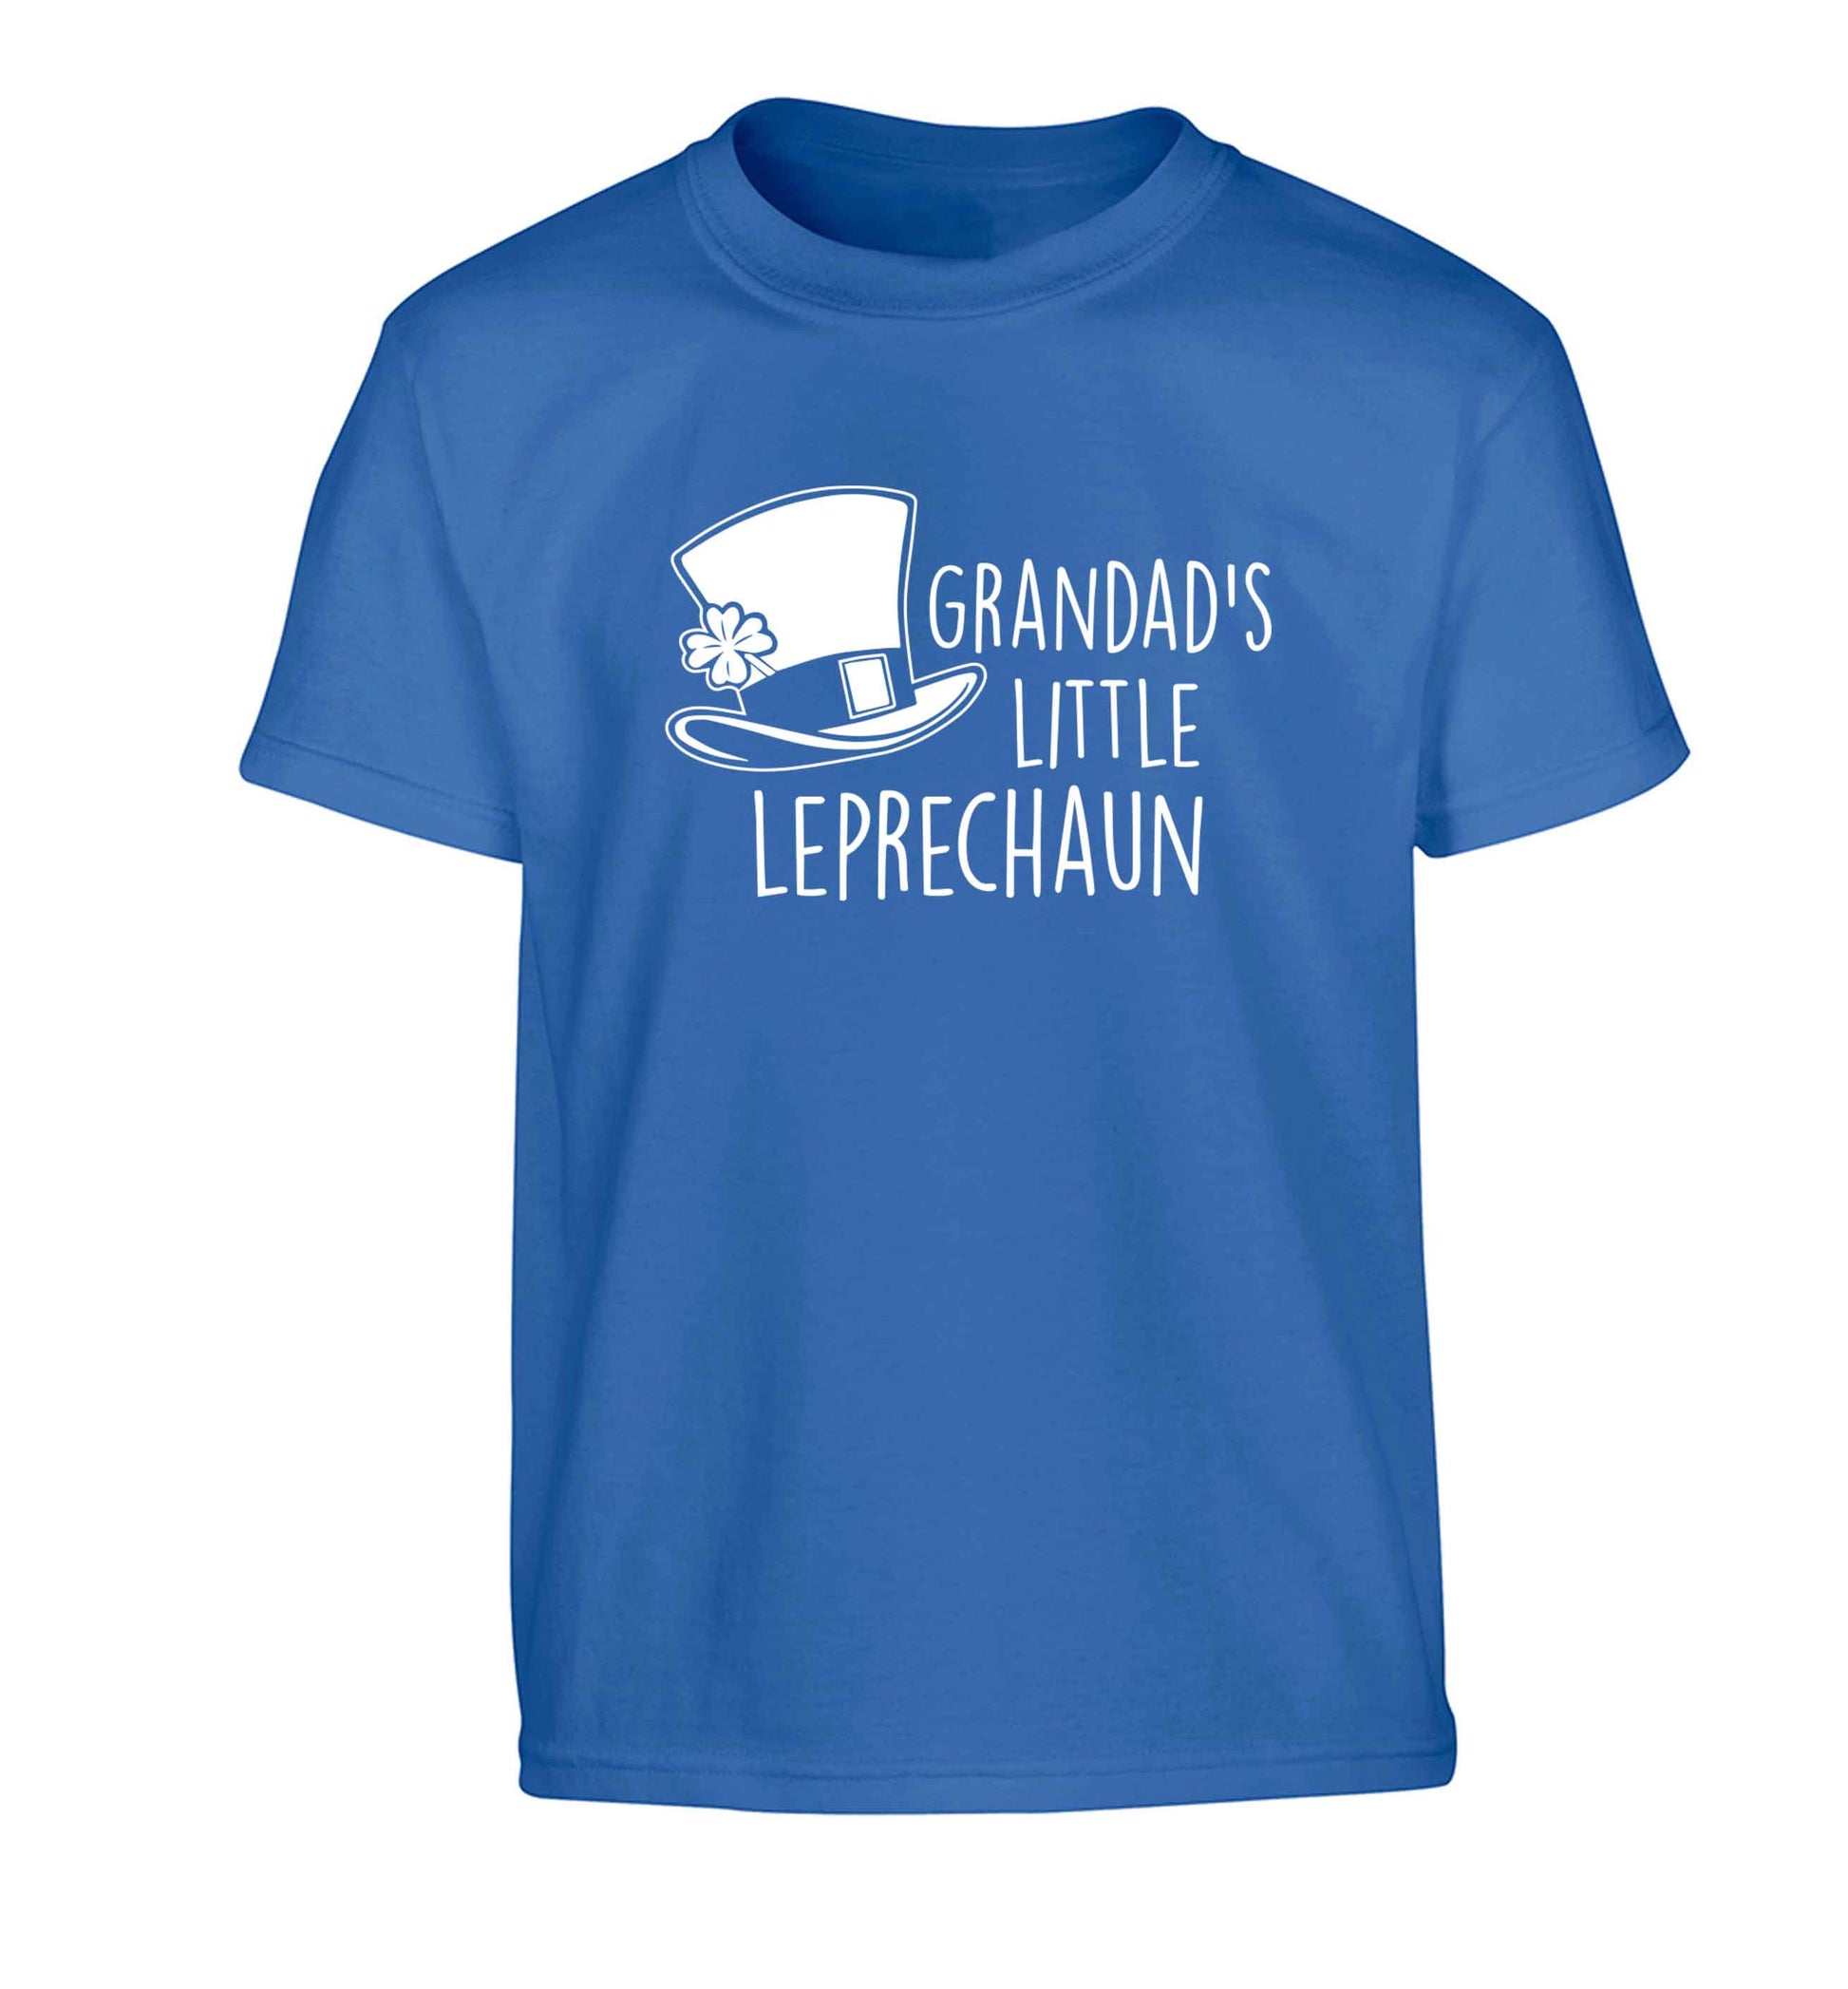 Grandad's little leprechaun Children's blue Tshirt 12-13 Years